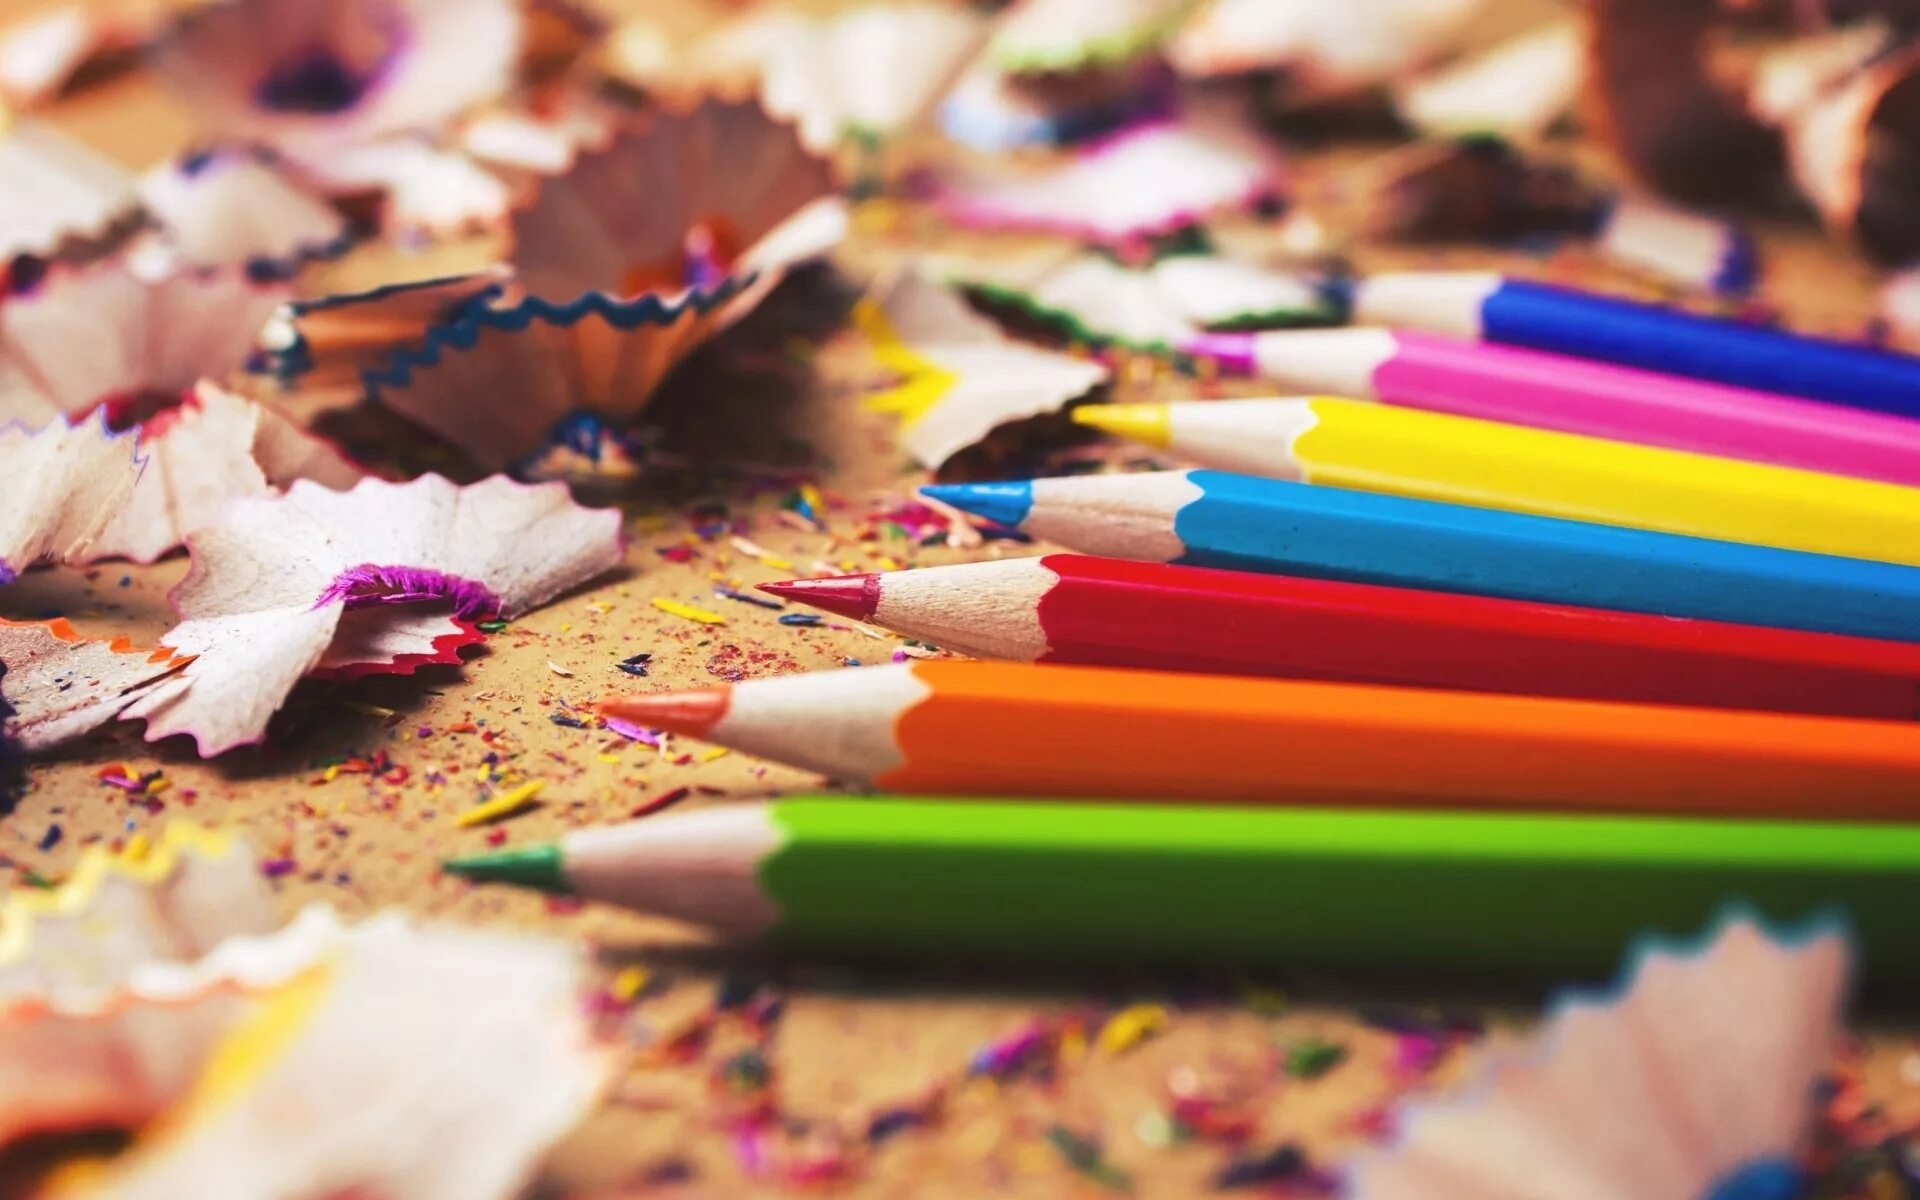 Можно картинки. Цветные карандаши на столе. Разбросанные цветные карандаши. Интересные карандаши. Раскиданные карандаши на столе.